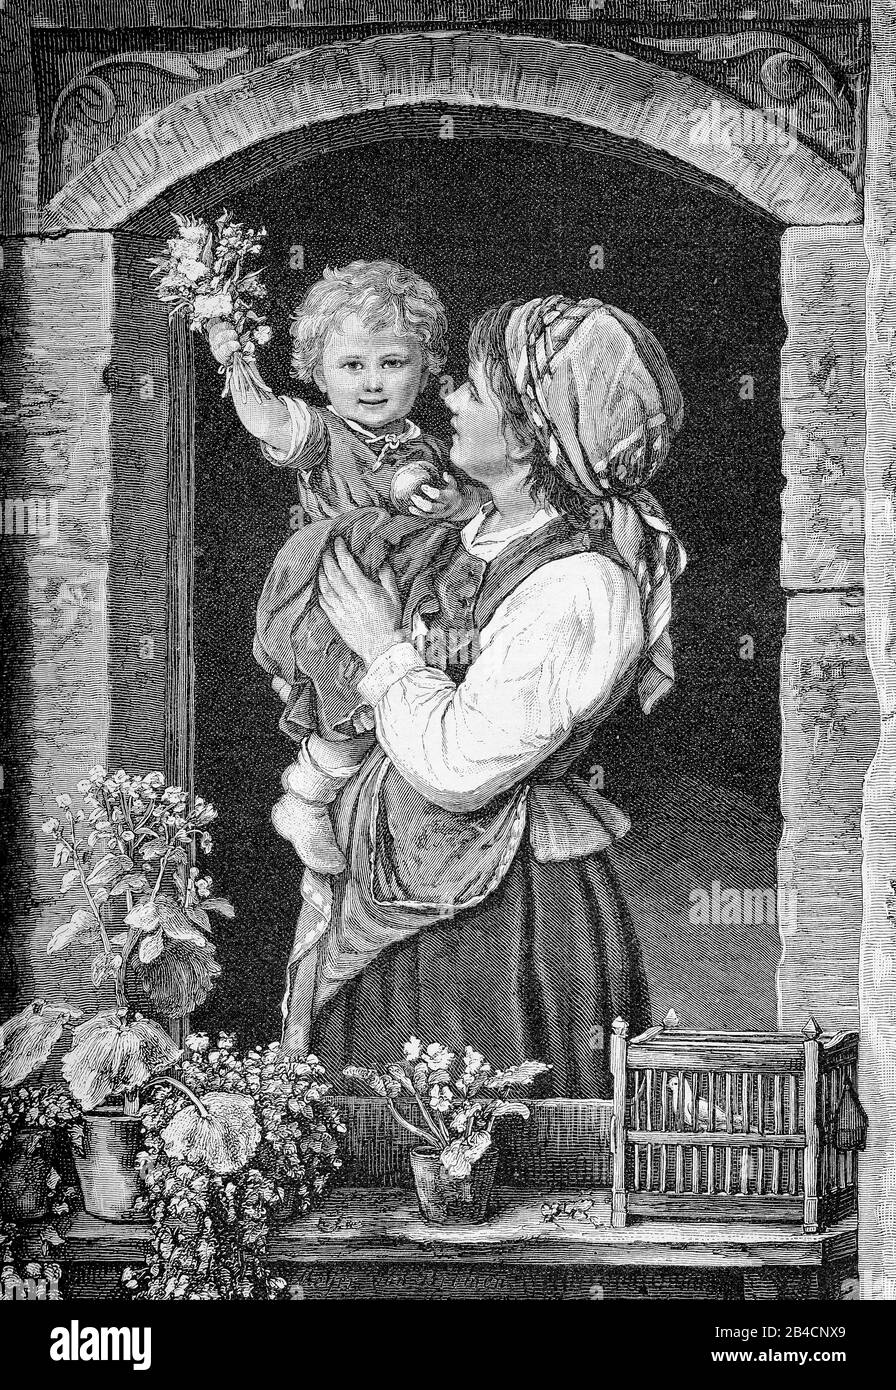 Accueil de bienvenue: Portrait d'un tout-petit tenant un bouquet de fleurs dans les bras de la mère accueillant le père à la maison de la fenêtre Banque D'Images